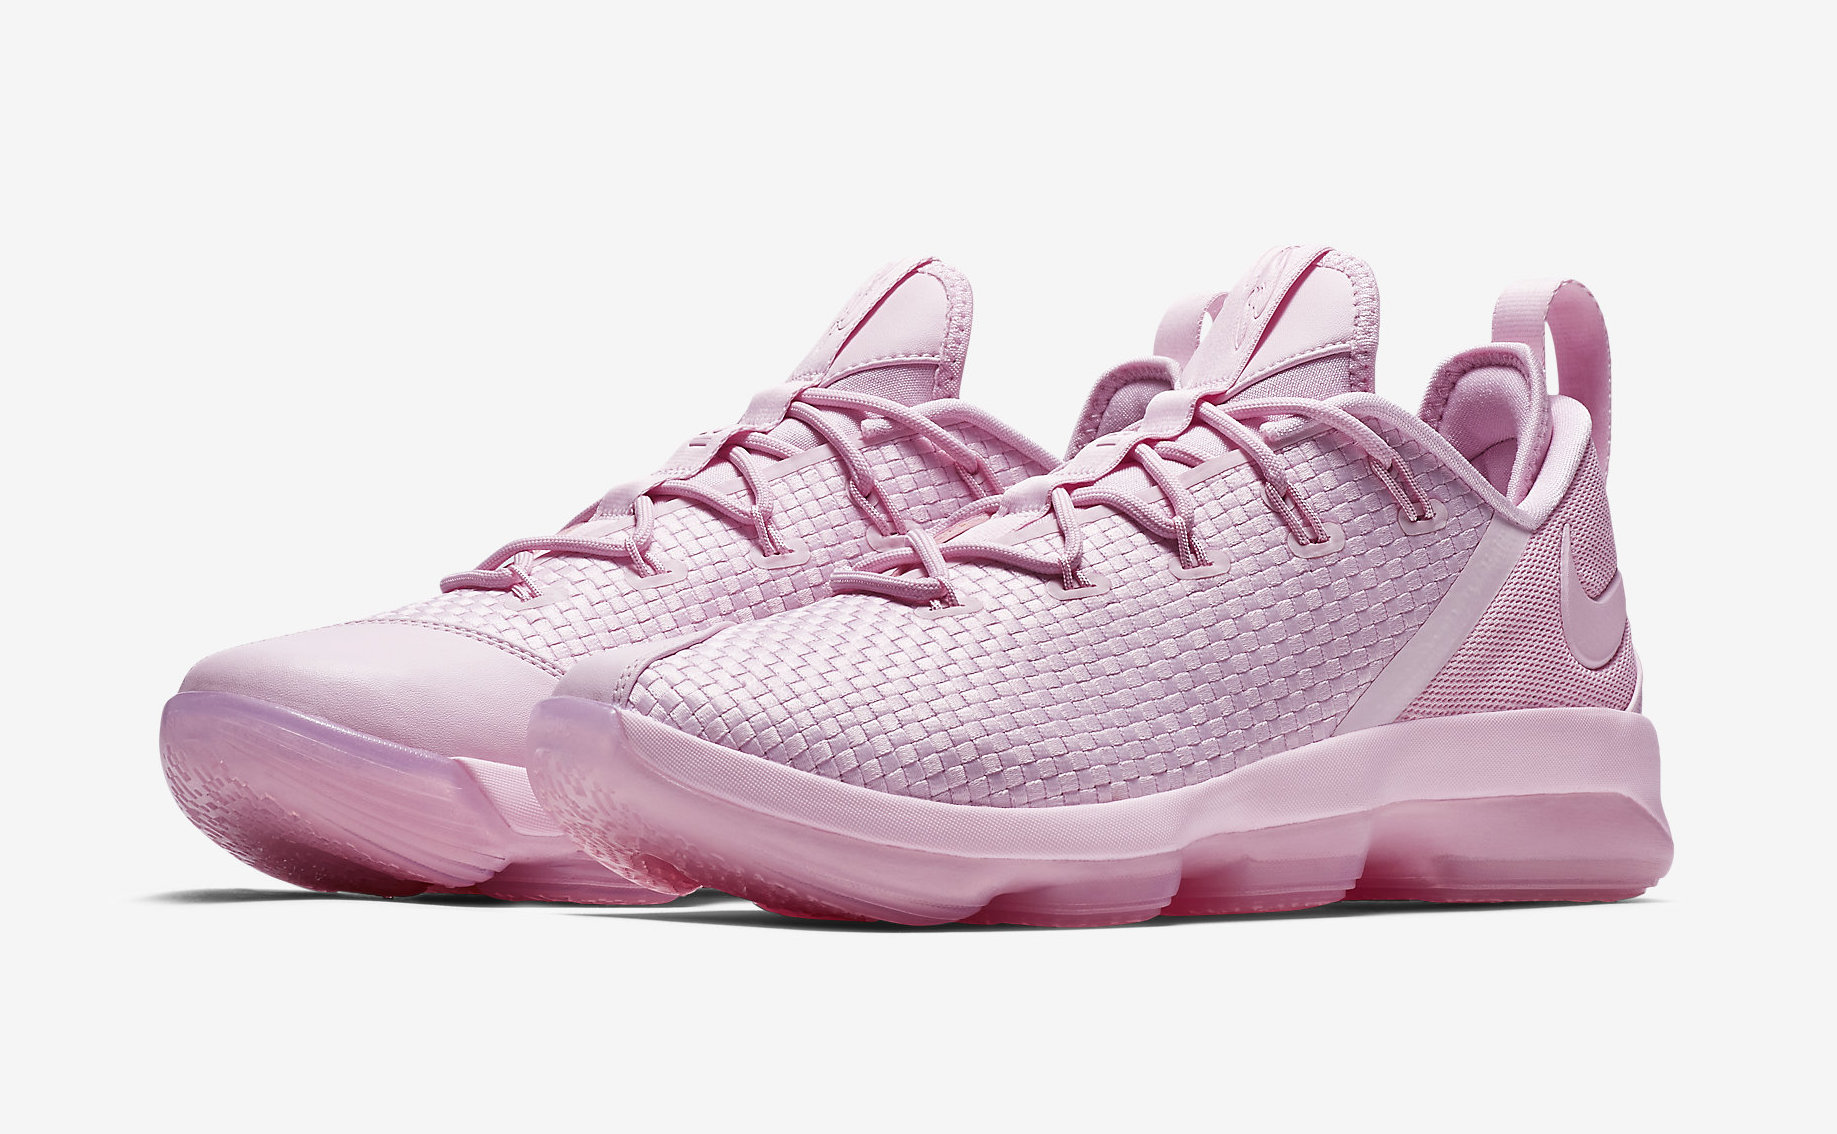 Nike LeBron 14 Low Pink 878635-600 